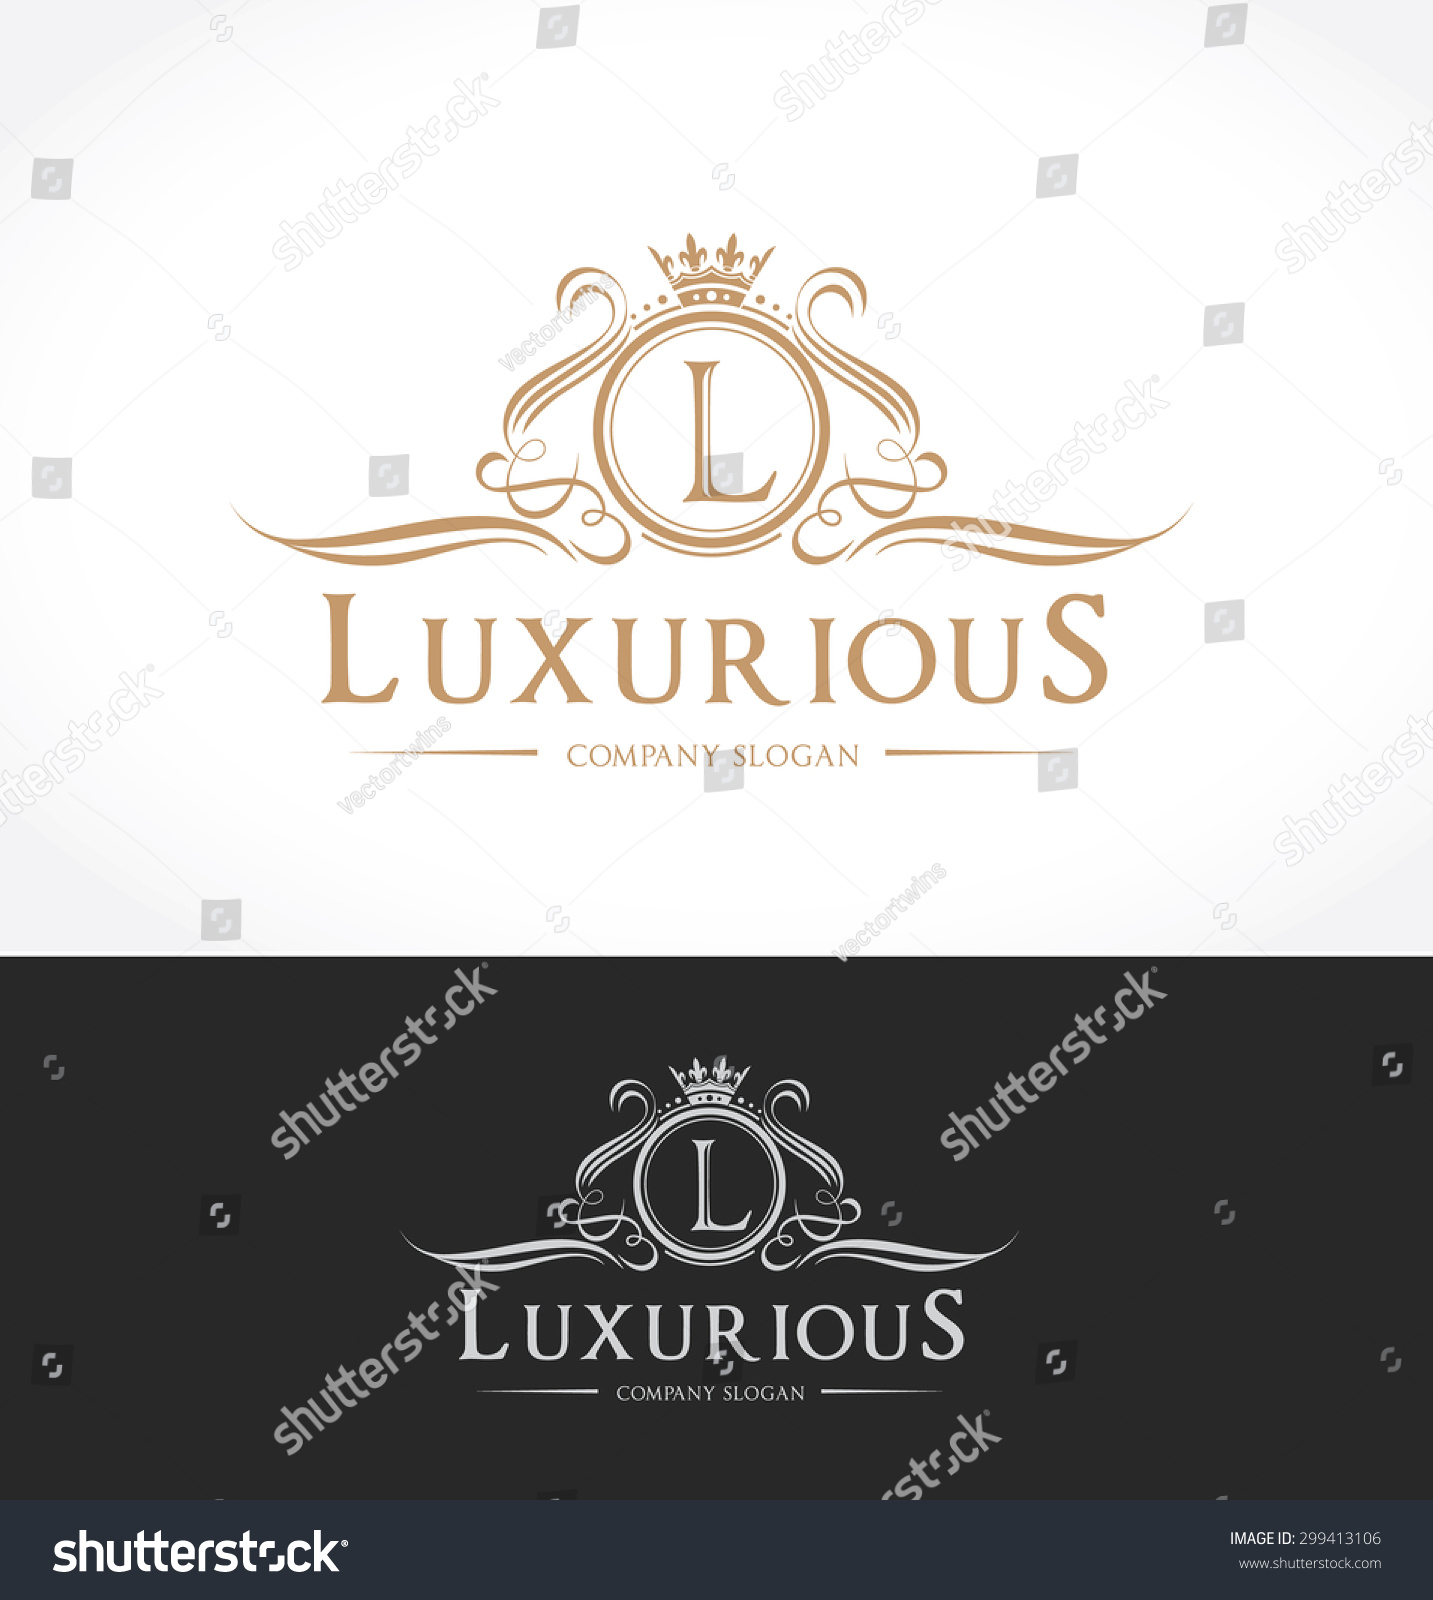 Luxury company. Palace logo Luxury.